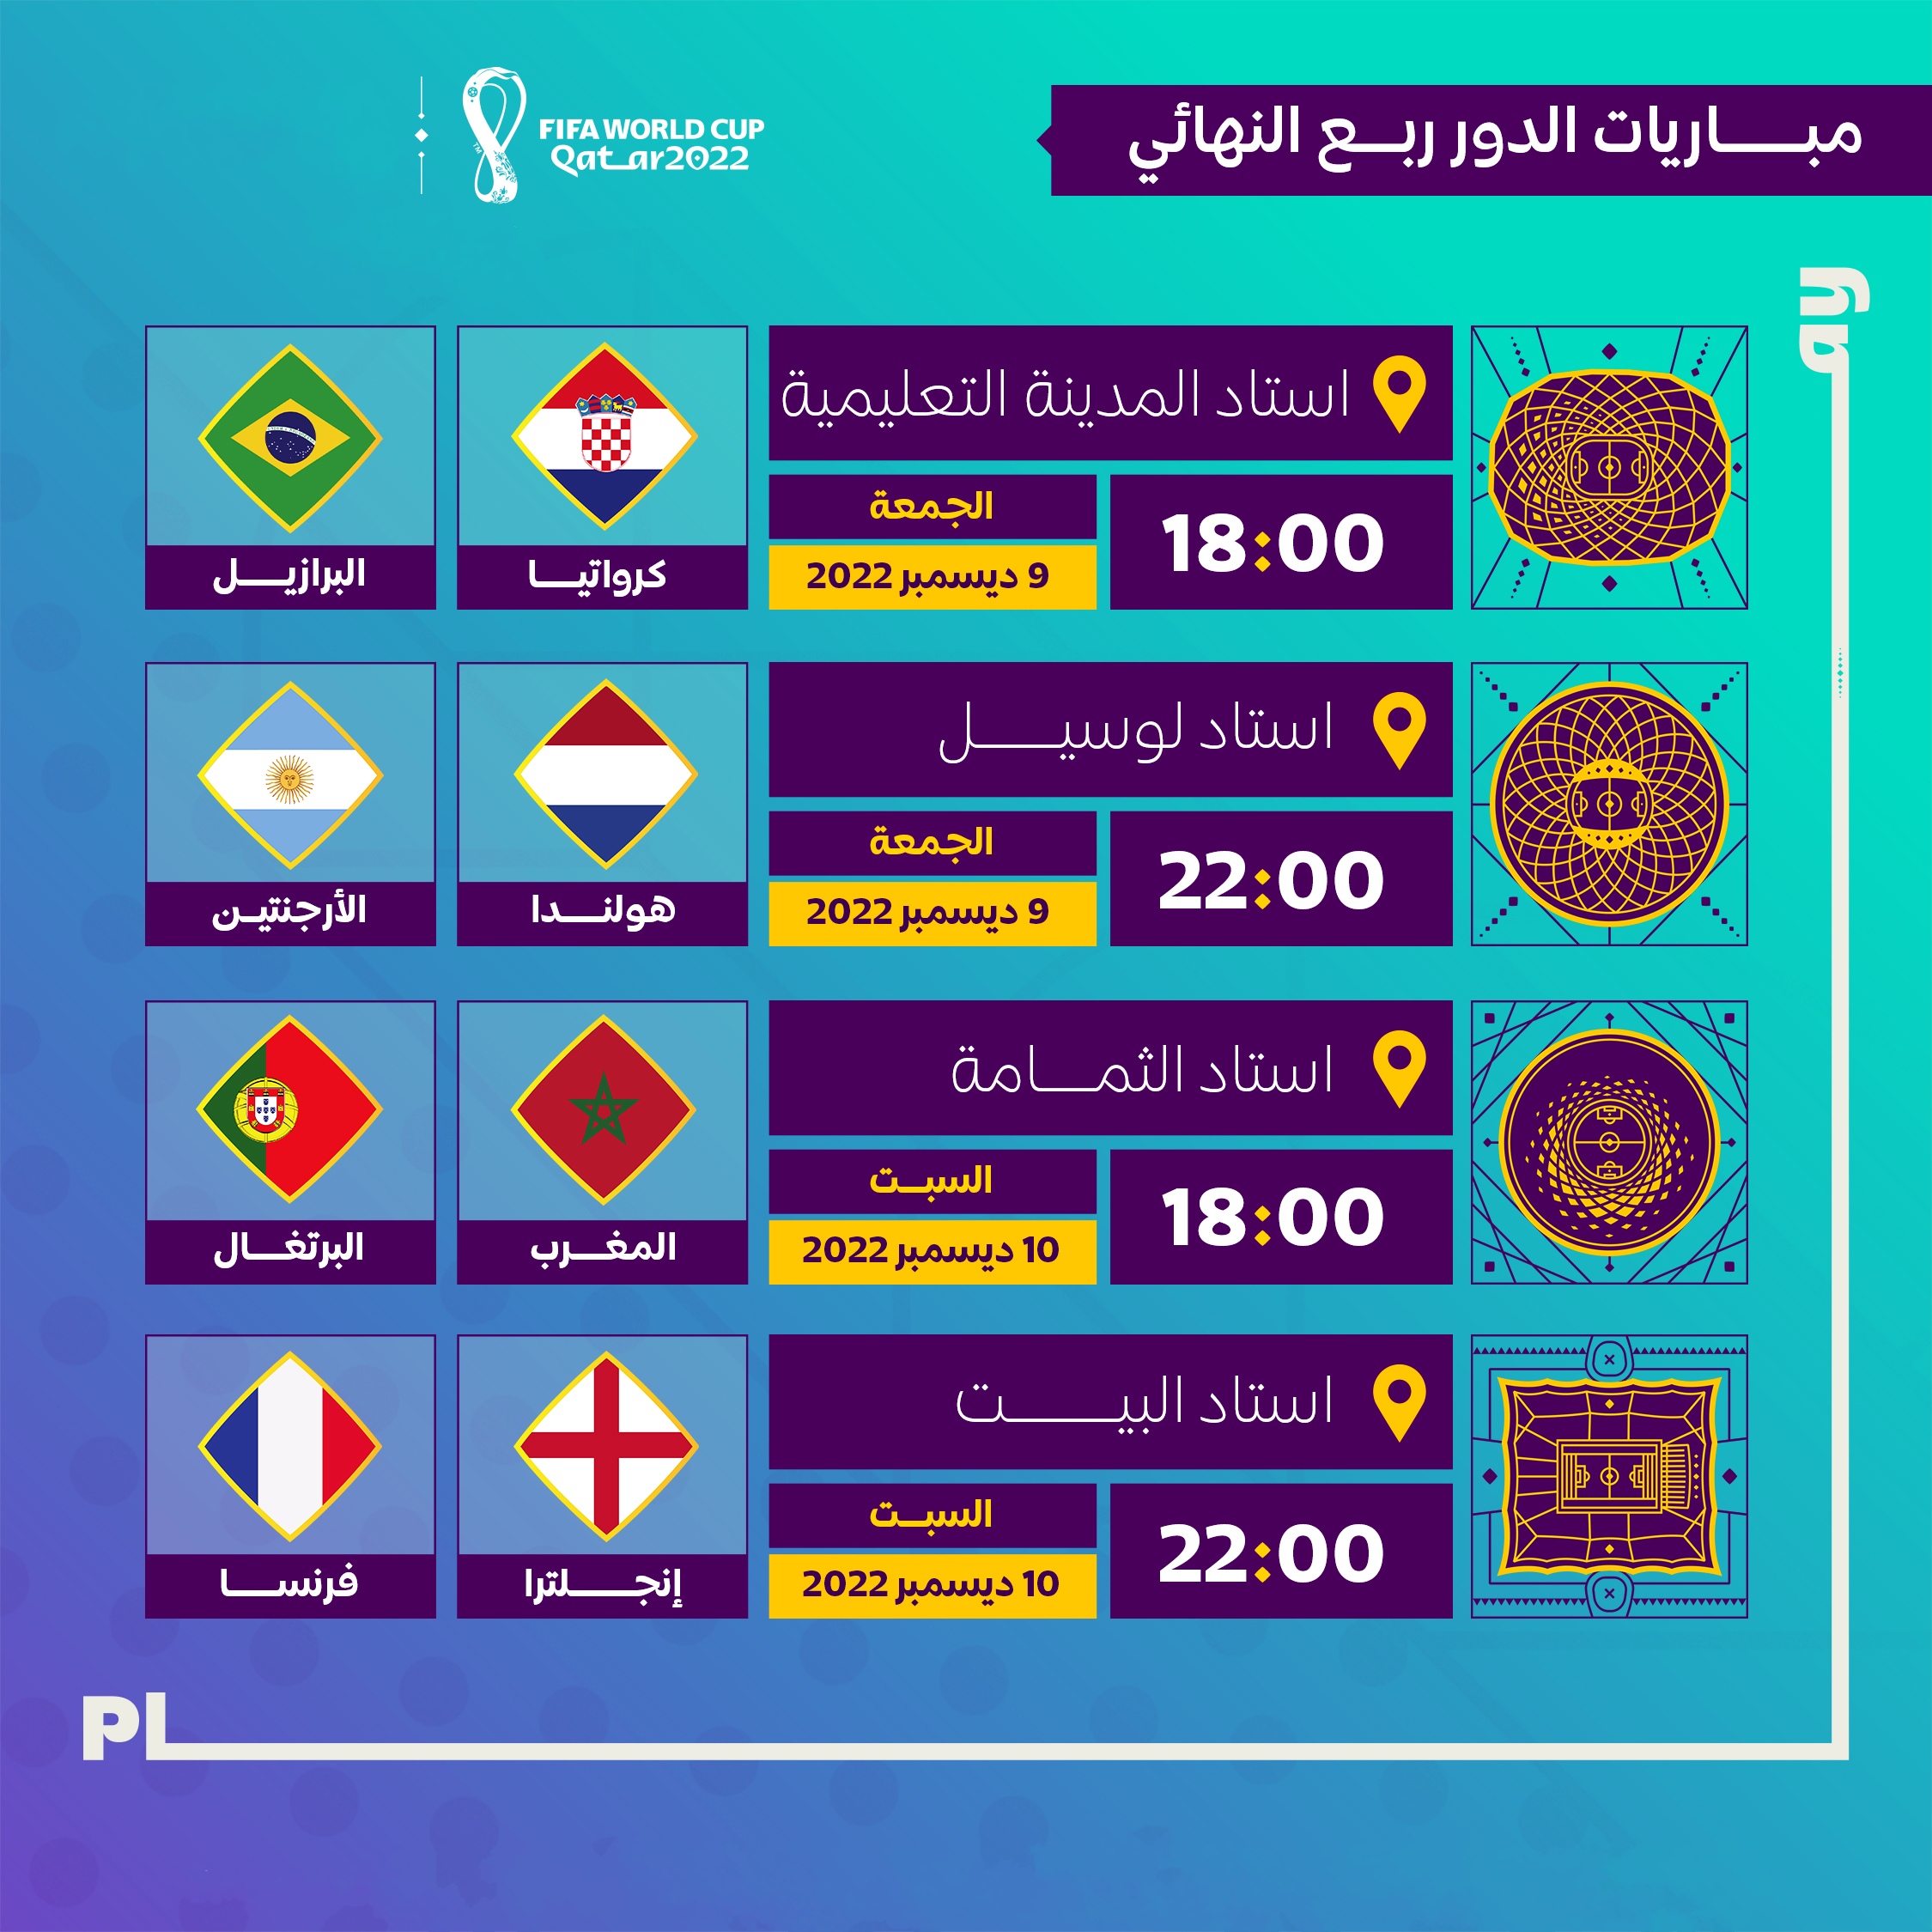 جدول مواعيد مباريات دور ربع النهائي أو دور الثمانية في كأس العالم قطر 2022